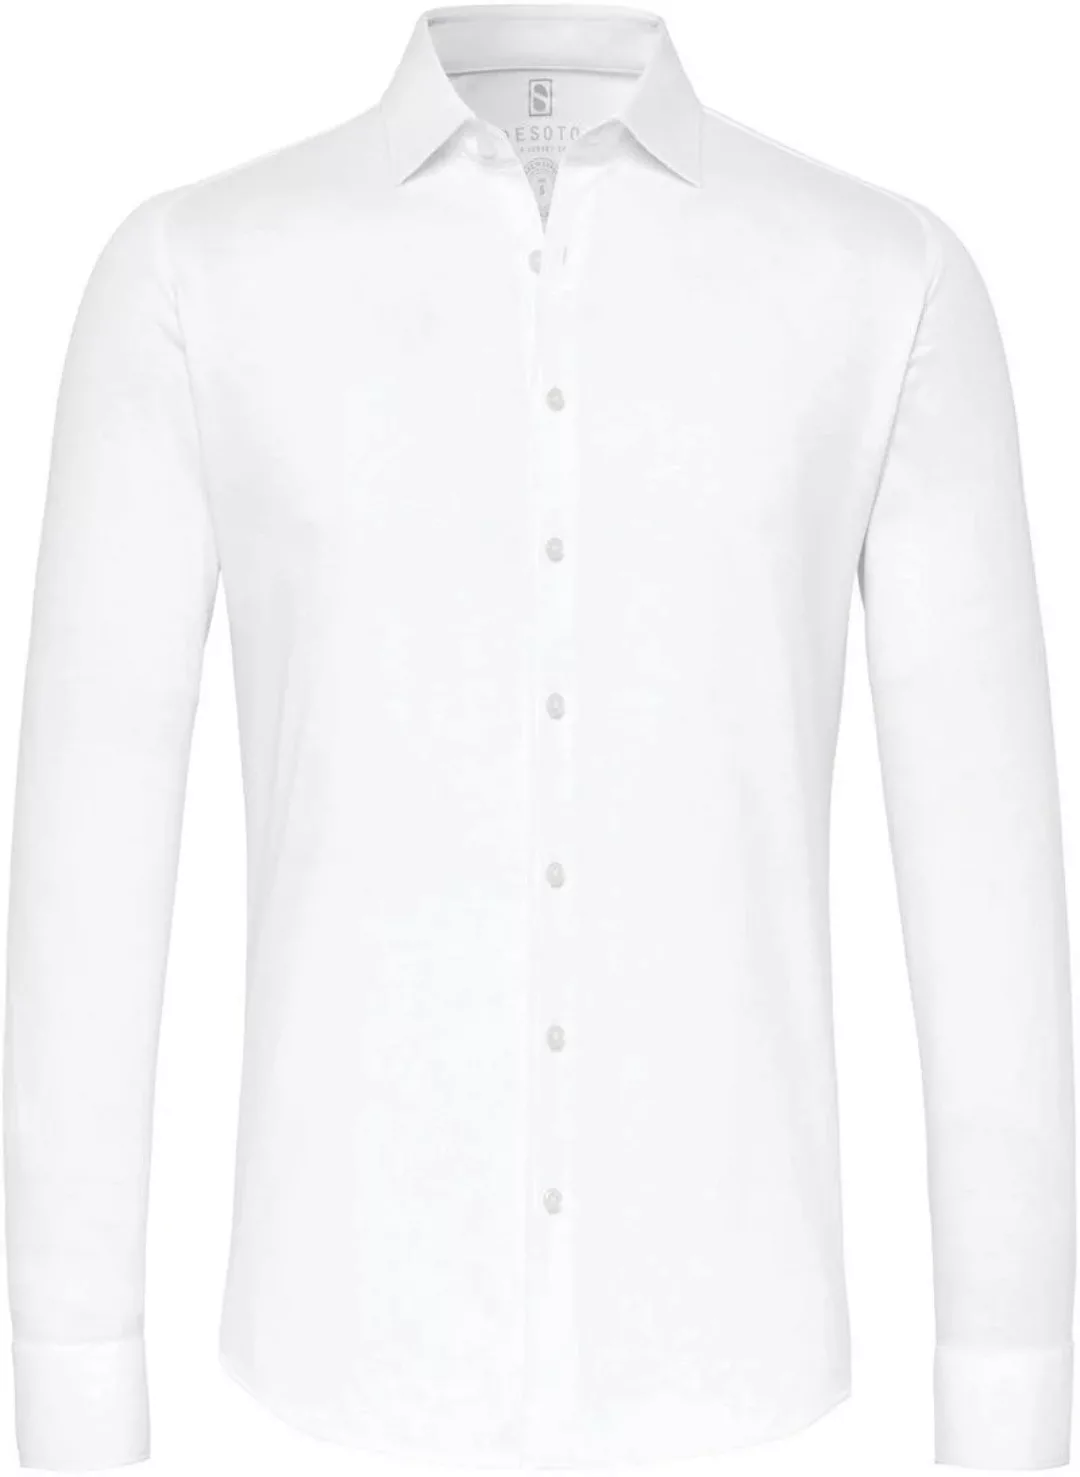 Desoto Hemd Piqué Bügelfrei Weiß - Größe L günstig online kaufen